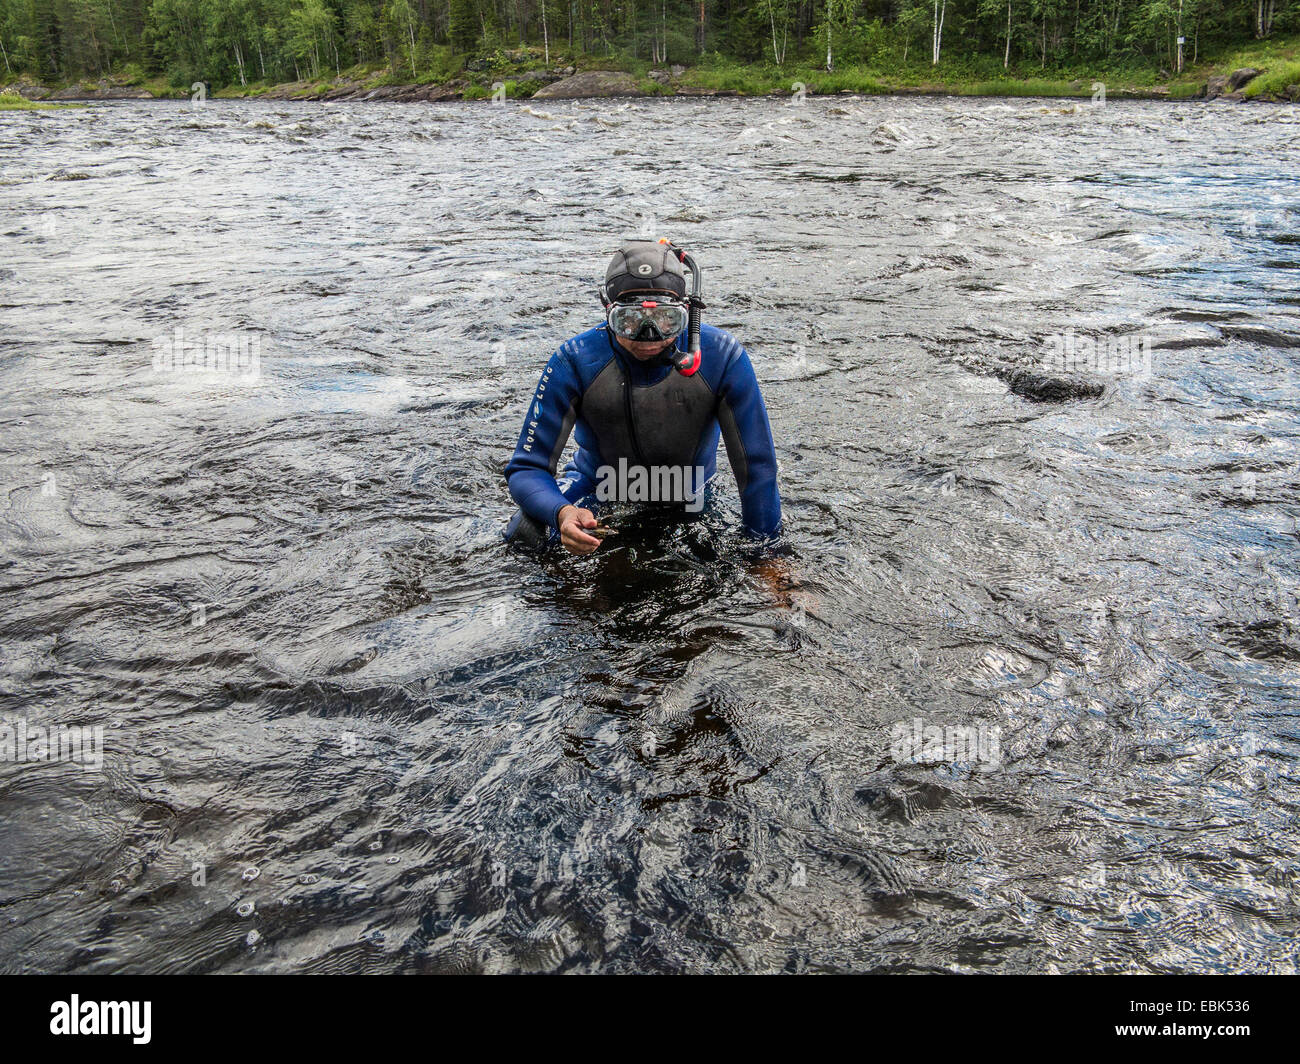 Mejillón de agua dulce (Scottish mejillón), oriental (pearlshell Margaritifera margaritifera), diver está saliendo de un río con un ejemplar en la mano, Rusia Karelien, Keret river Foto de stock